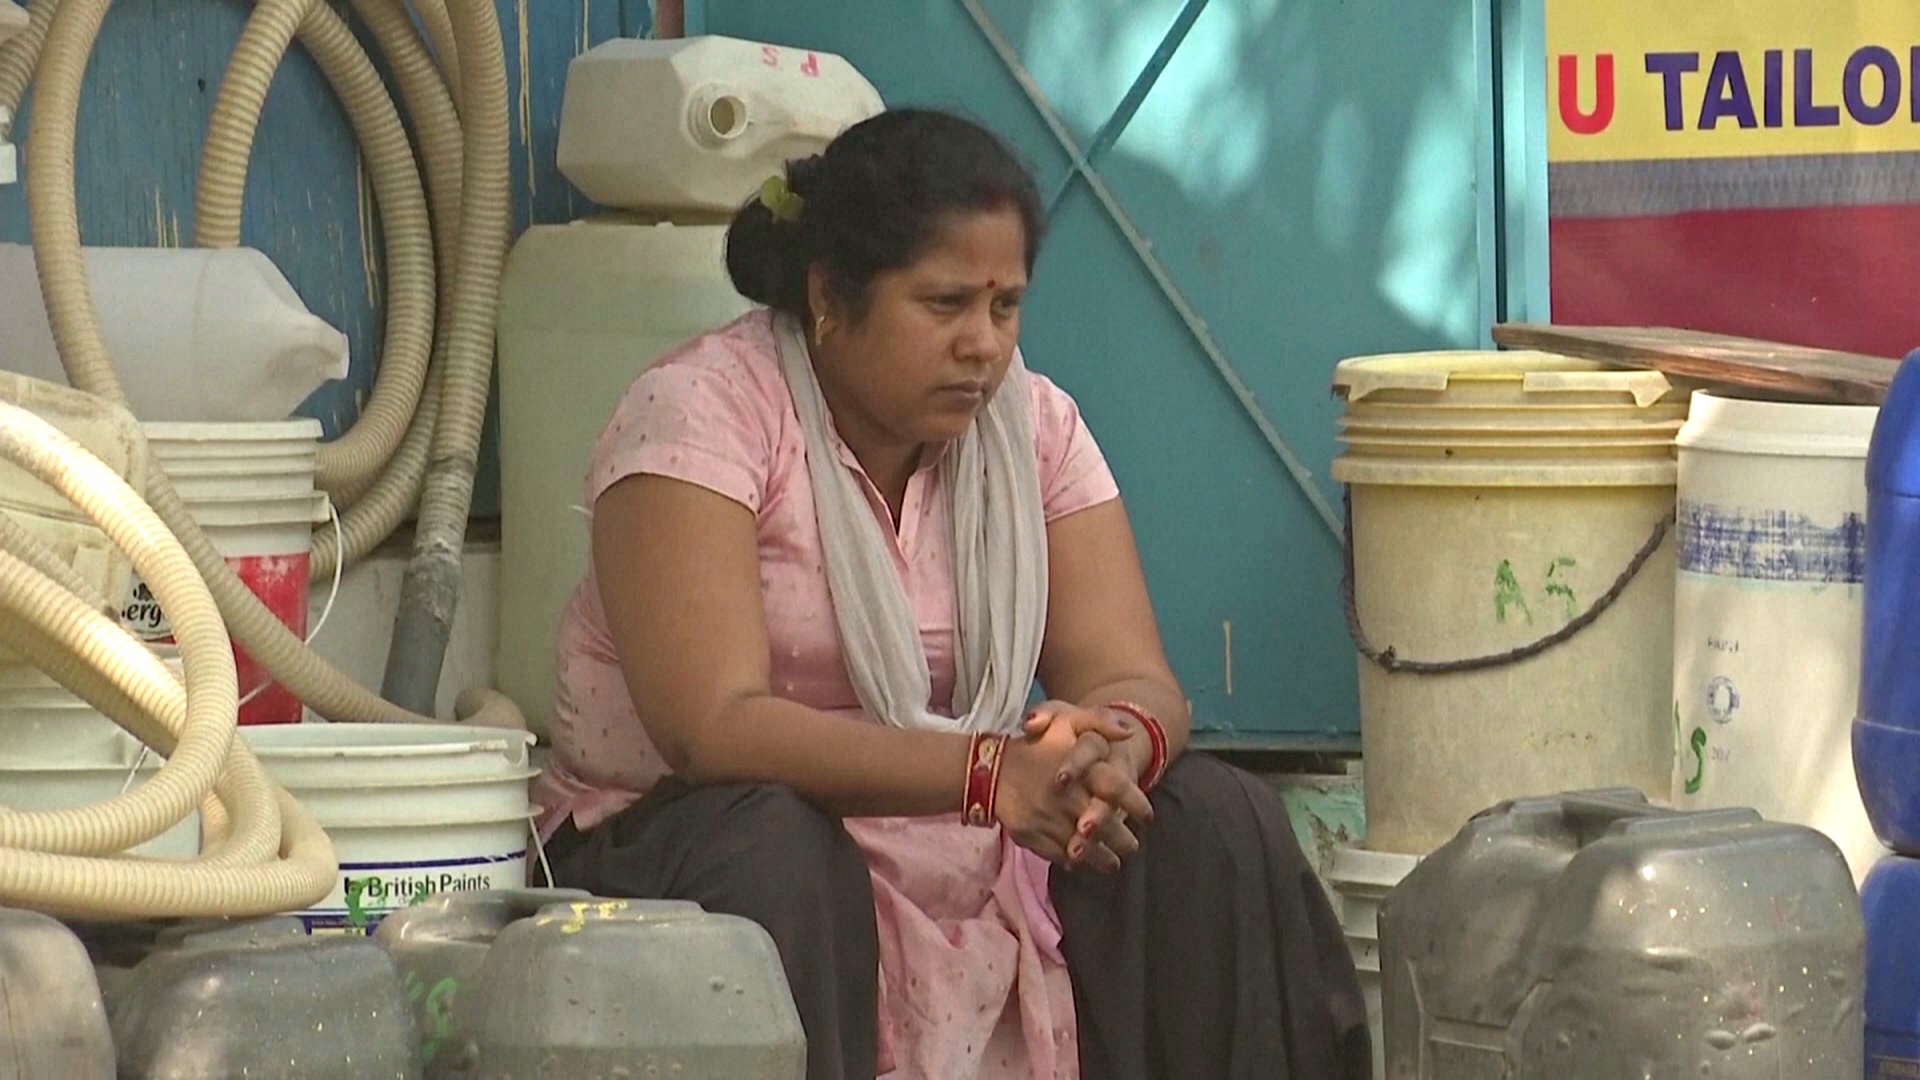 Волна жары вызвала в Индии нехватку воды